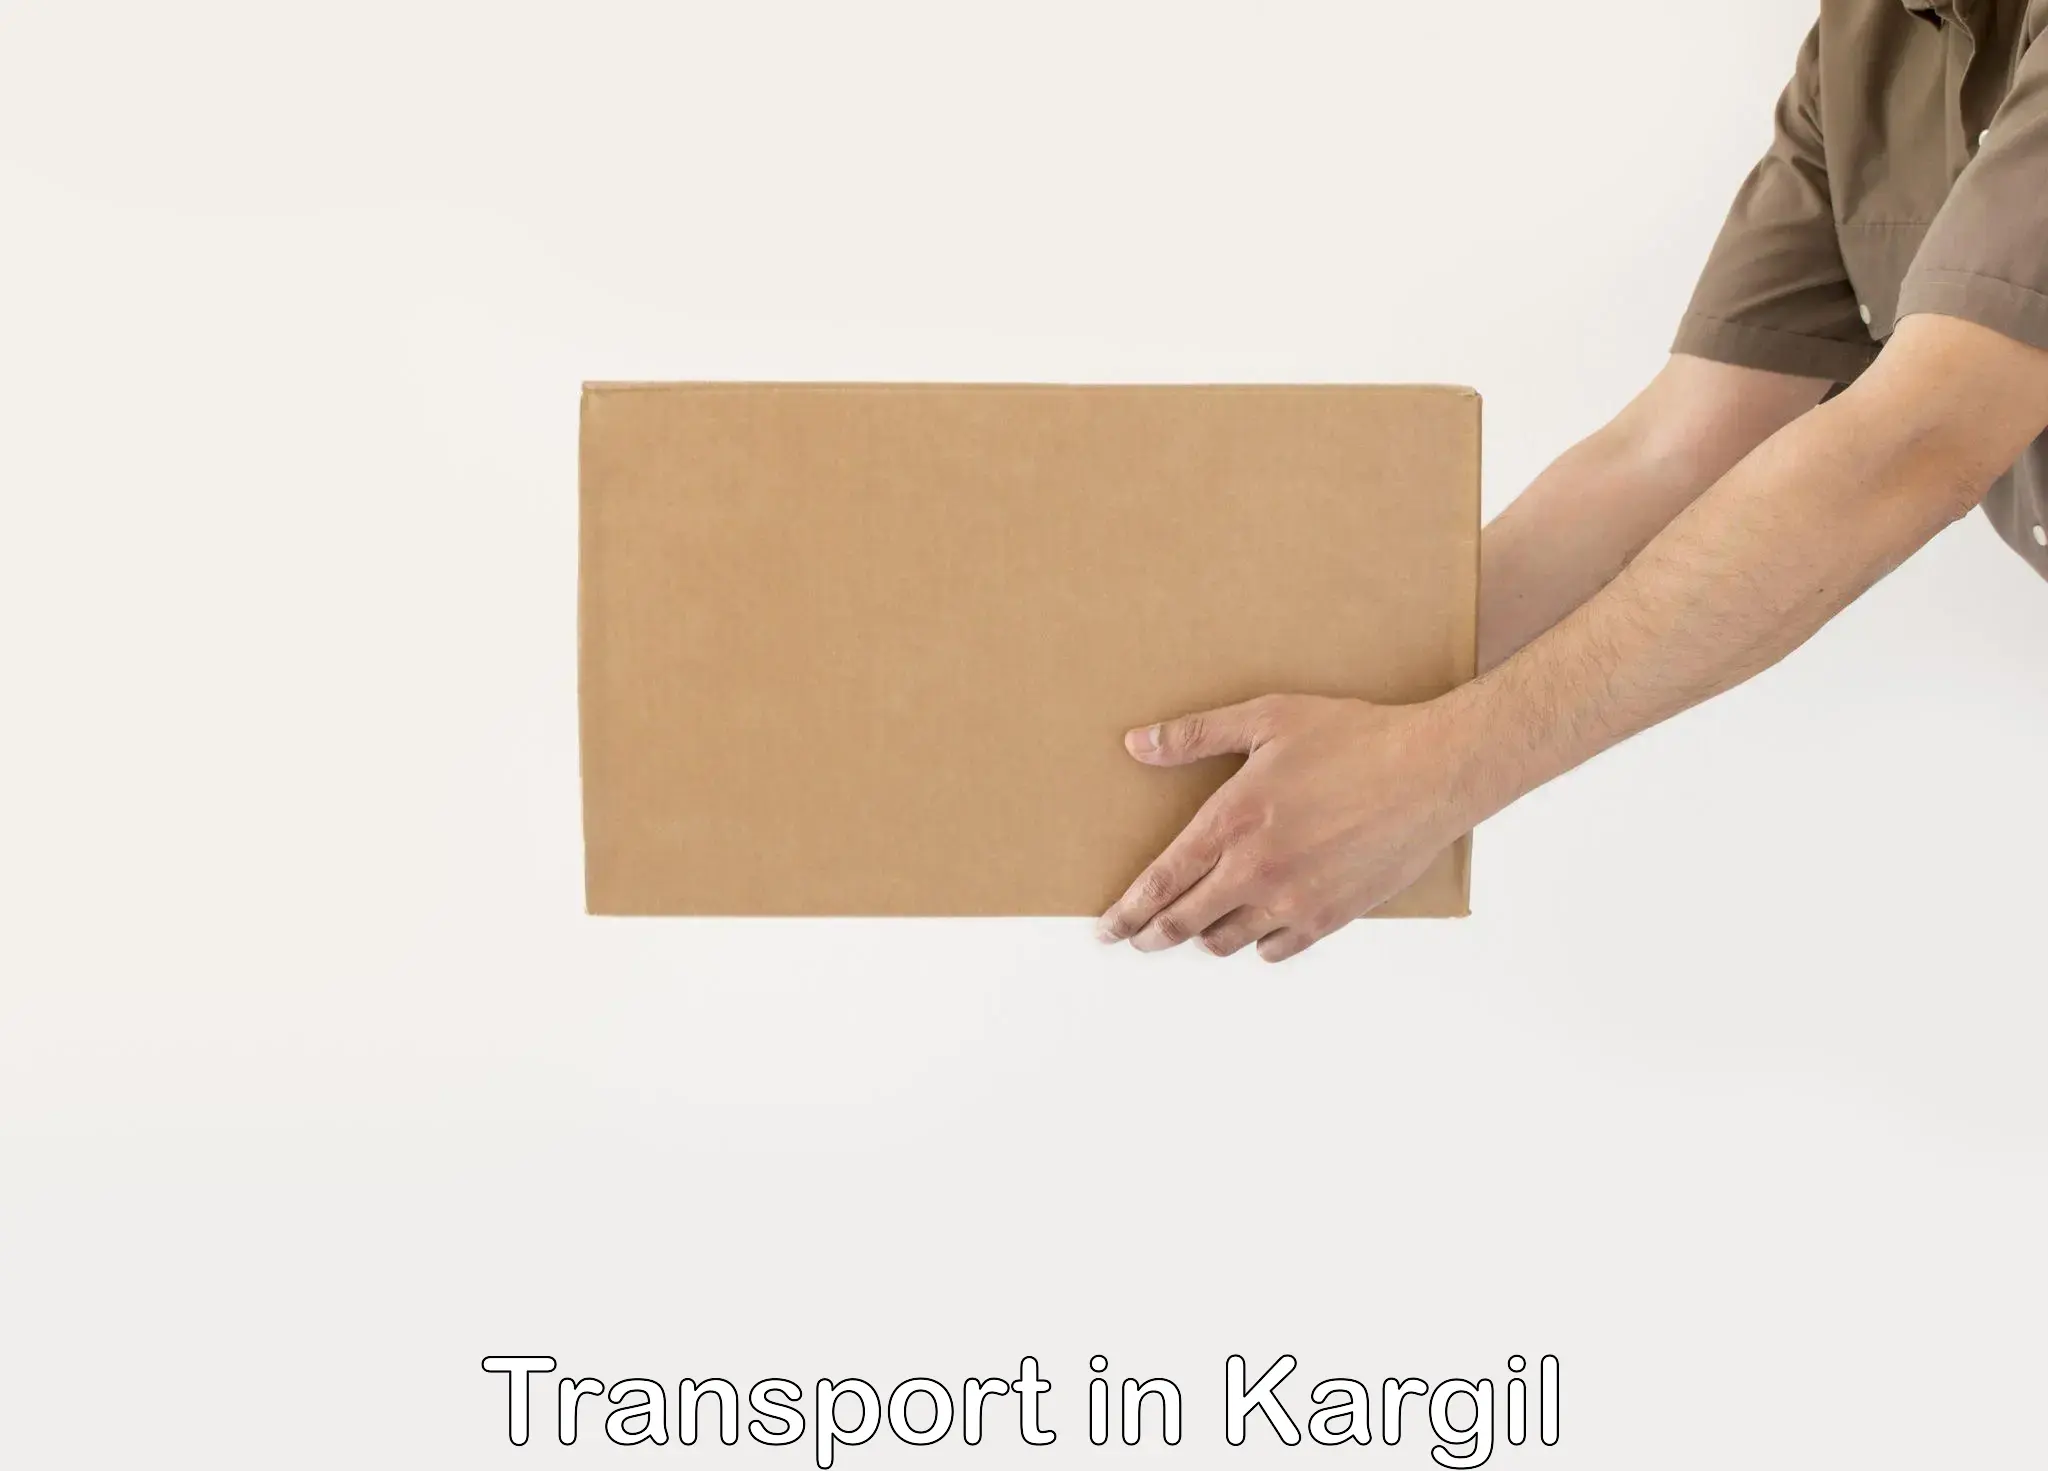 Daily parcel service transport in Kargil